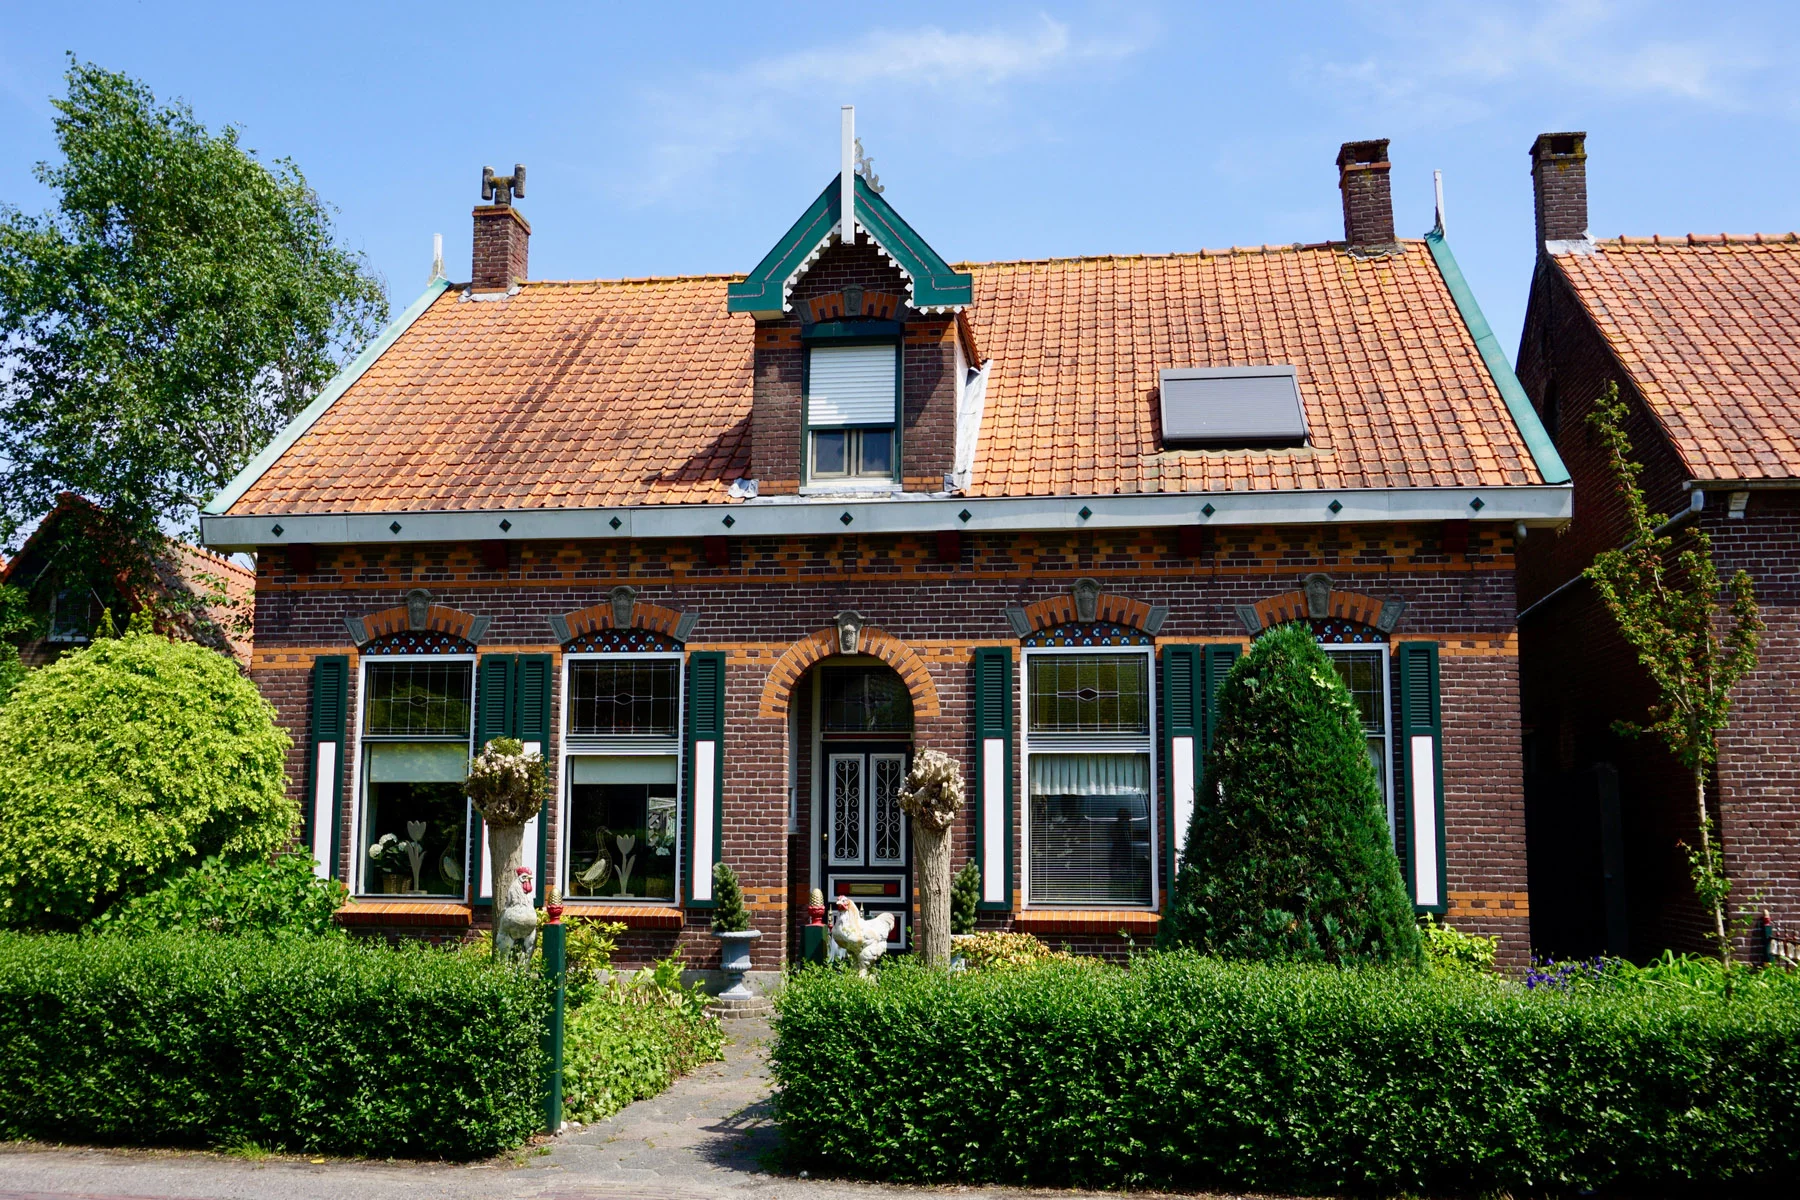 A typical Dutch home